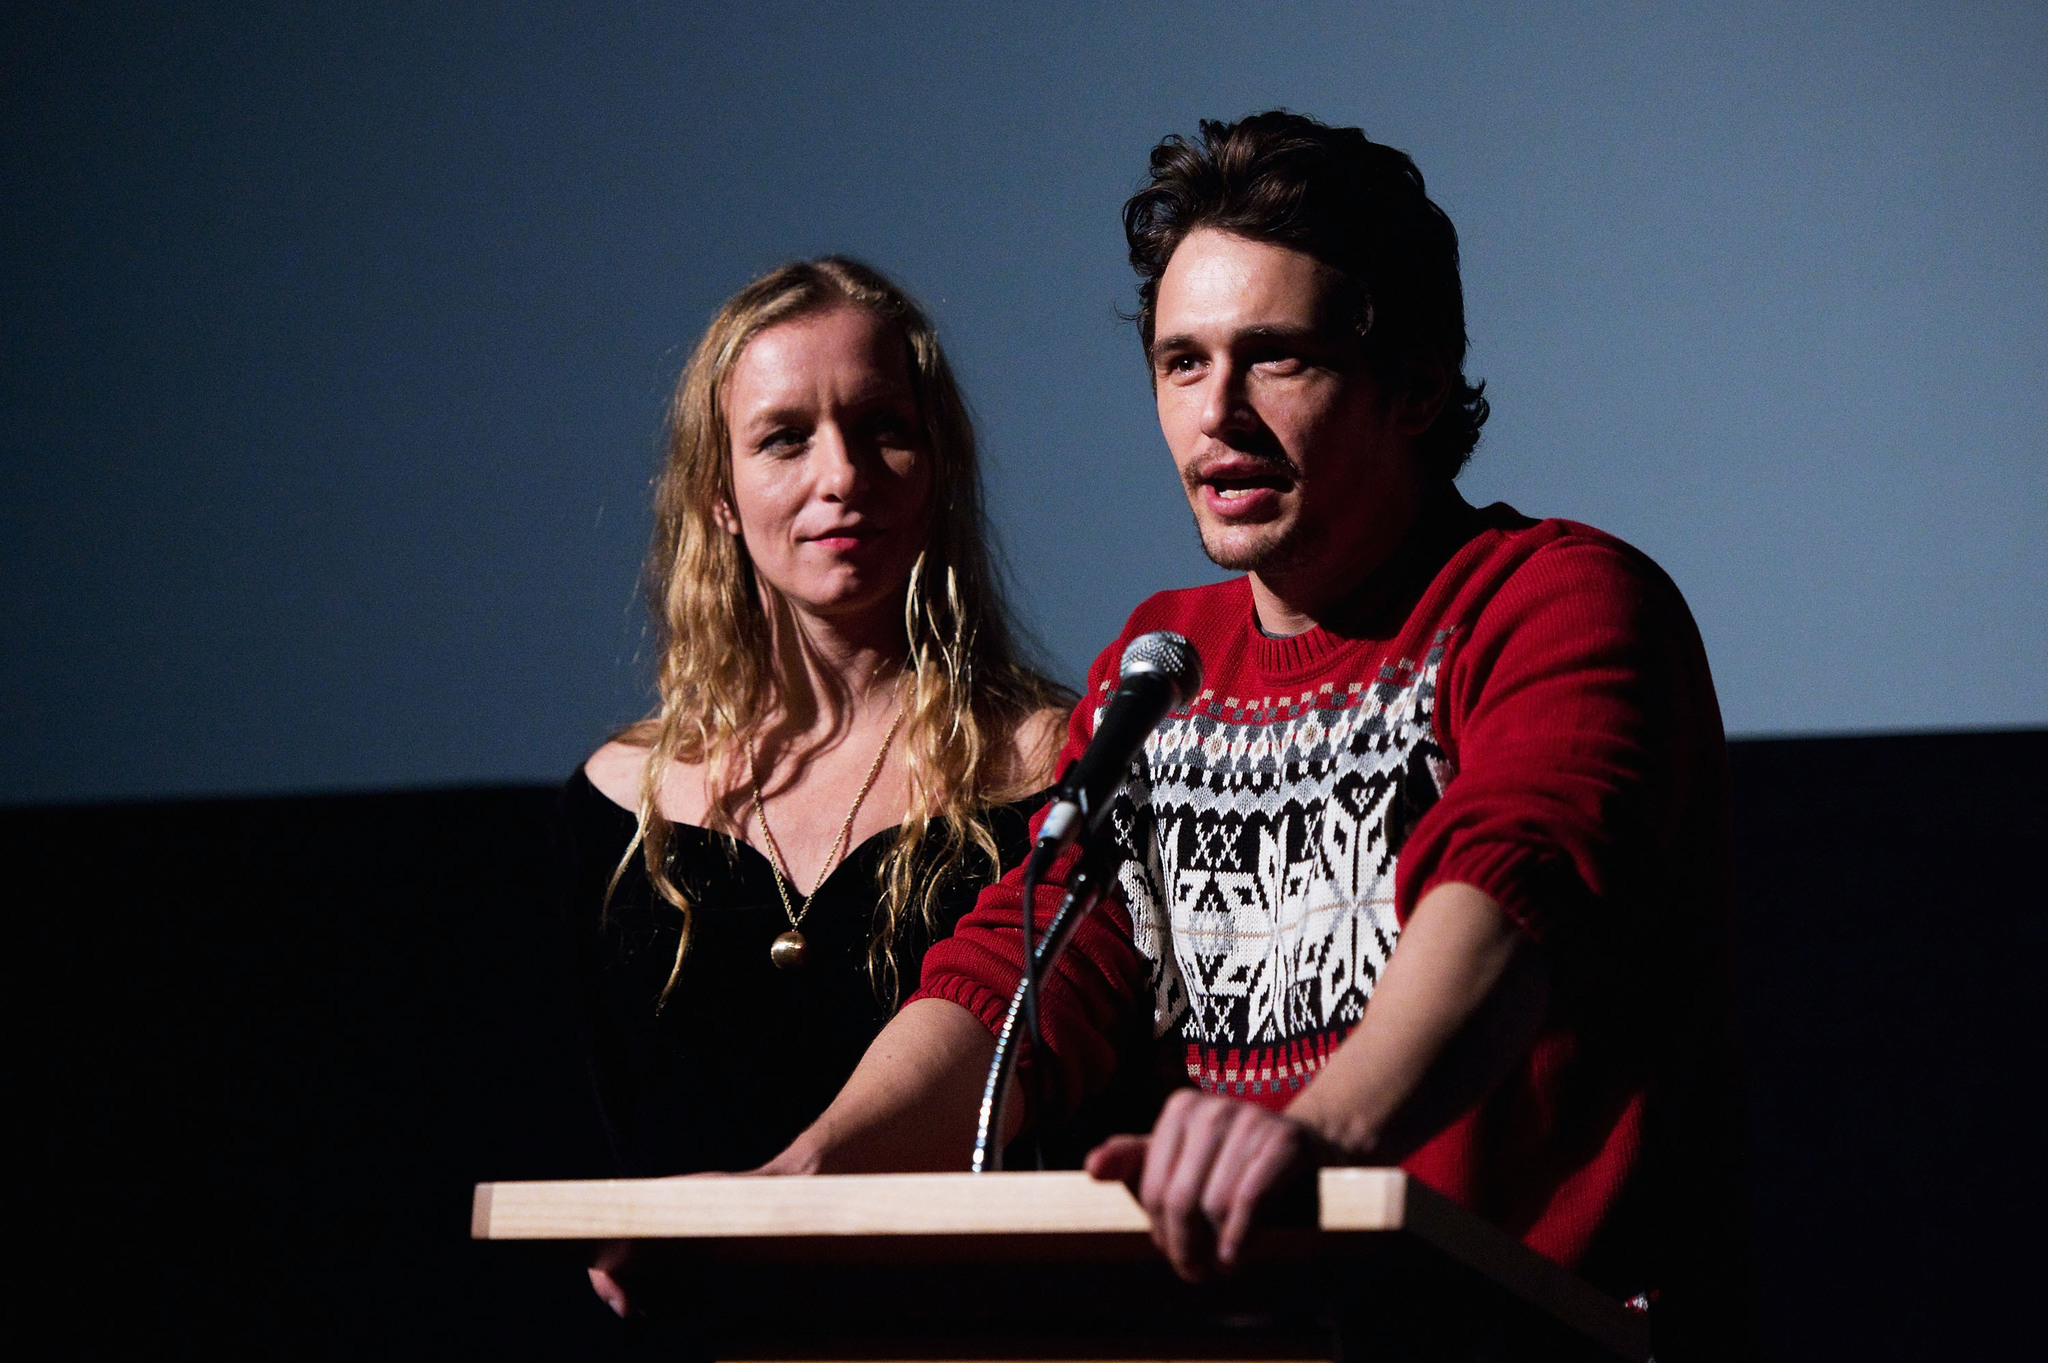 James Franco and Christina Voros at event of Kink (2013)